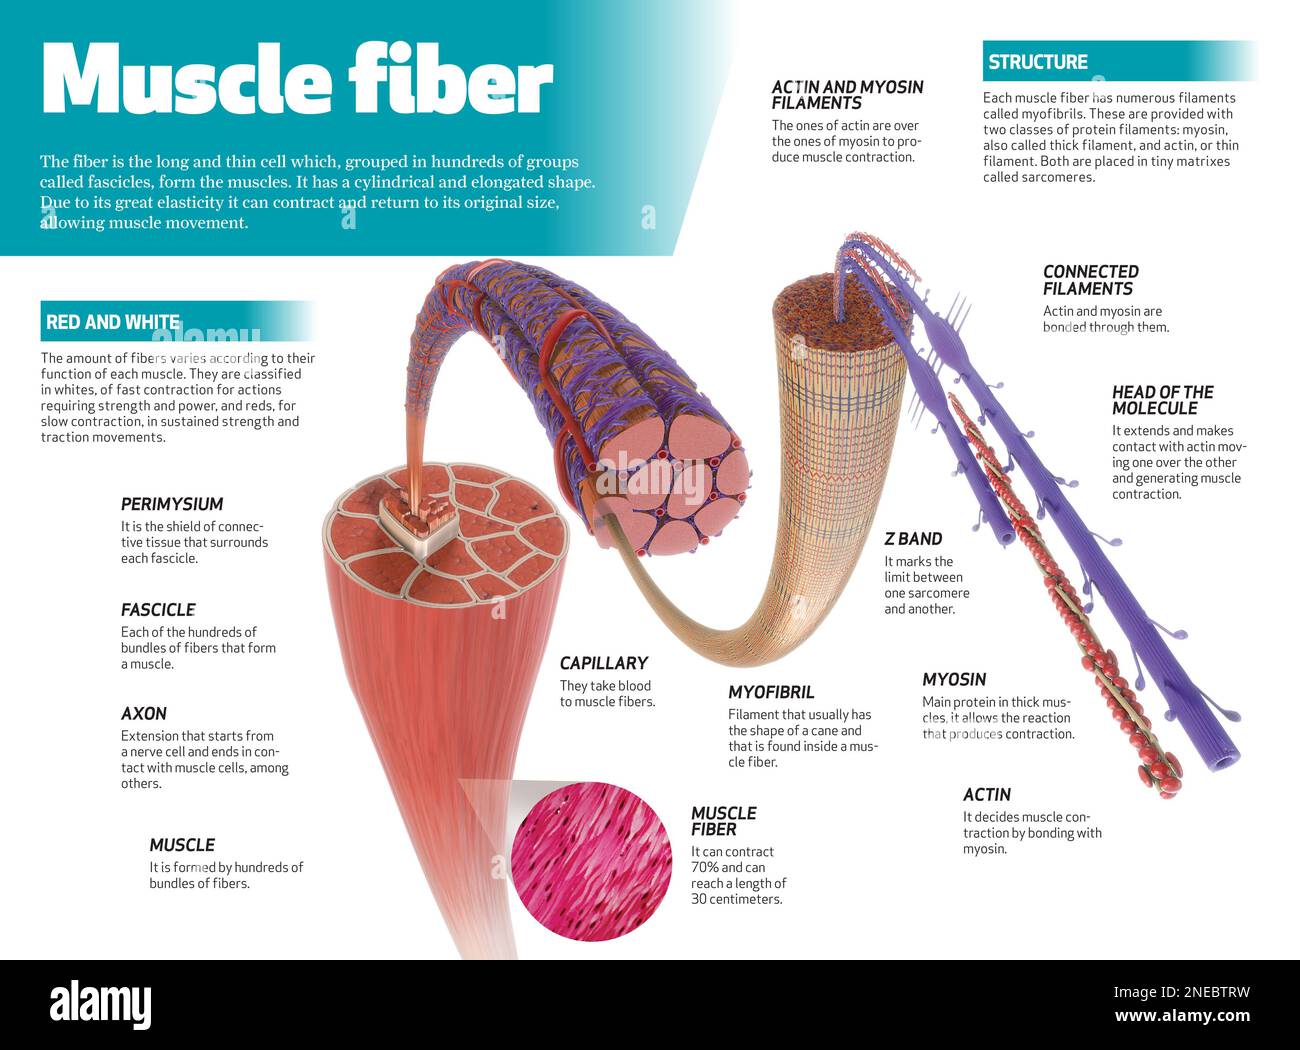 Infografica sulla fibra muscolare, lunga cella sottile che, raggruppata in centinaia di gruppi chiamati fascicles, costituisce i muscoli. [Adobe InDesign (.indd); 4795x3543]. Foto Stock